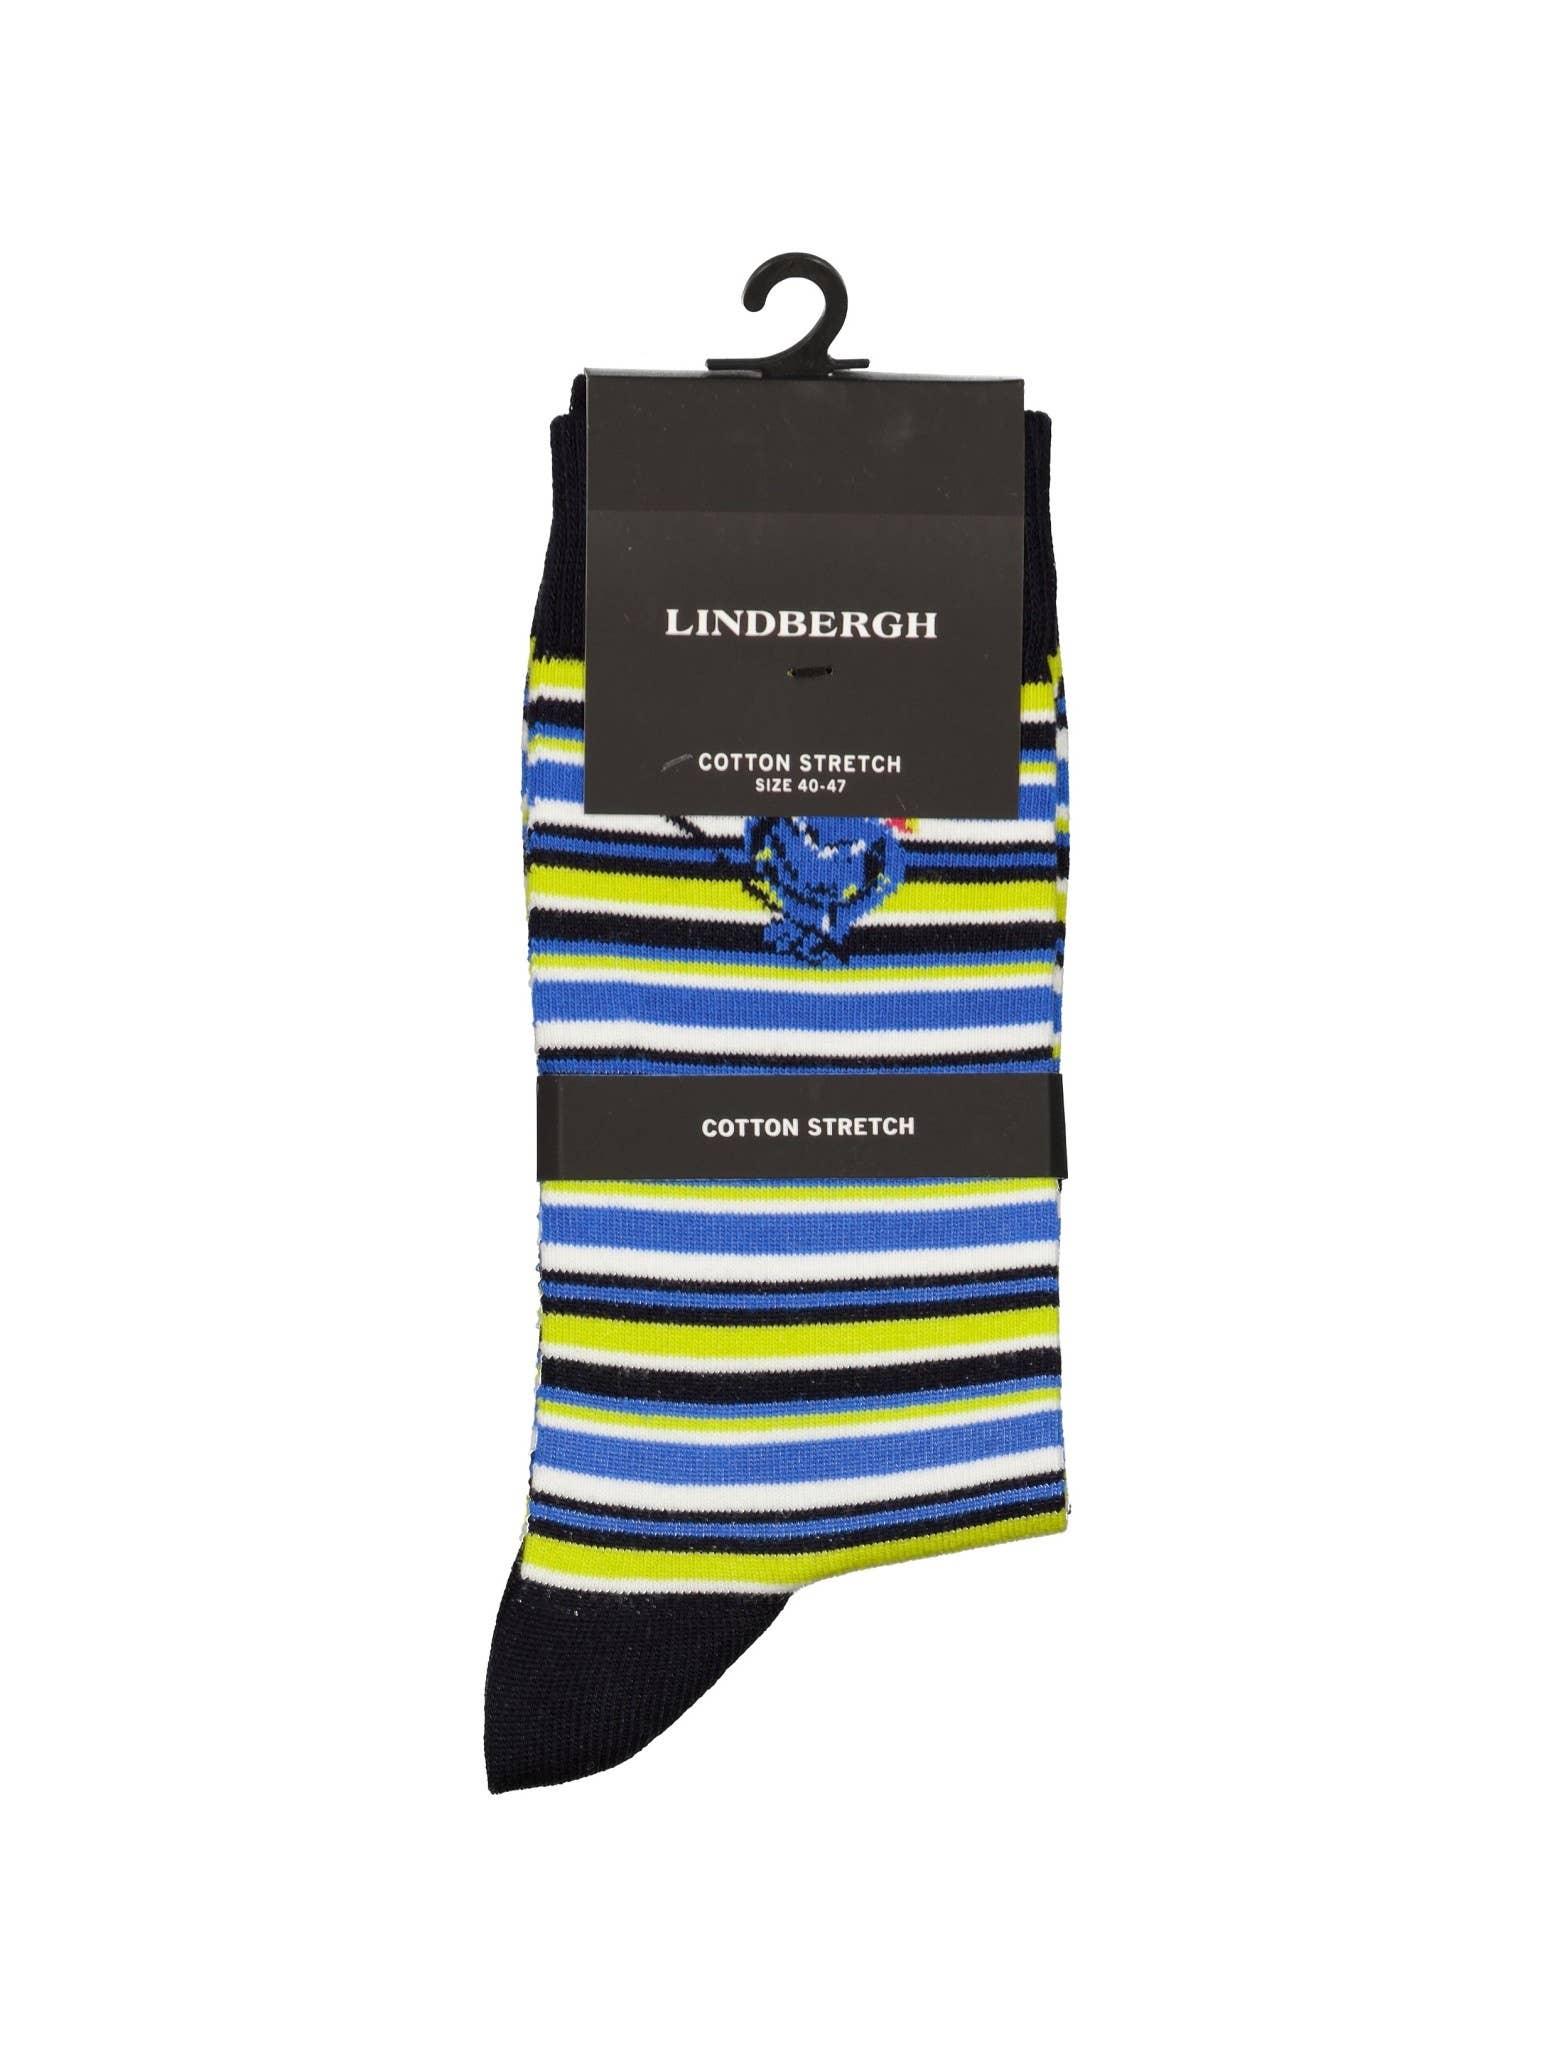 Lindbergh - Cotton Pattern Sock Style: 30-941005US